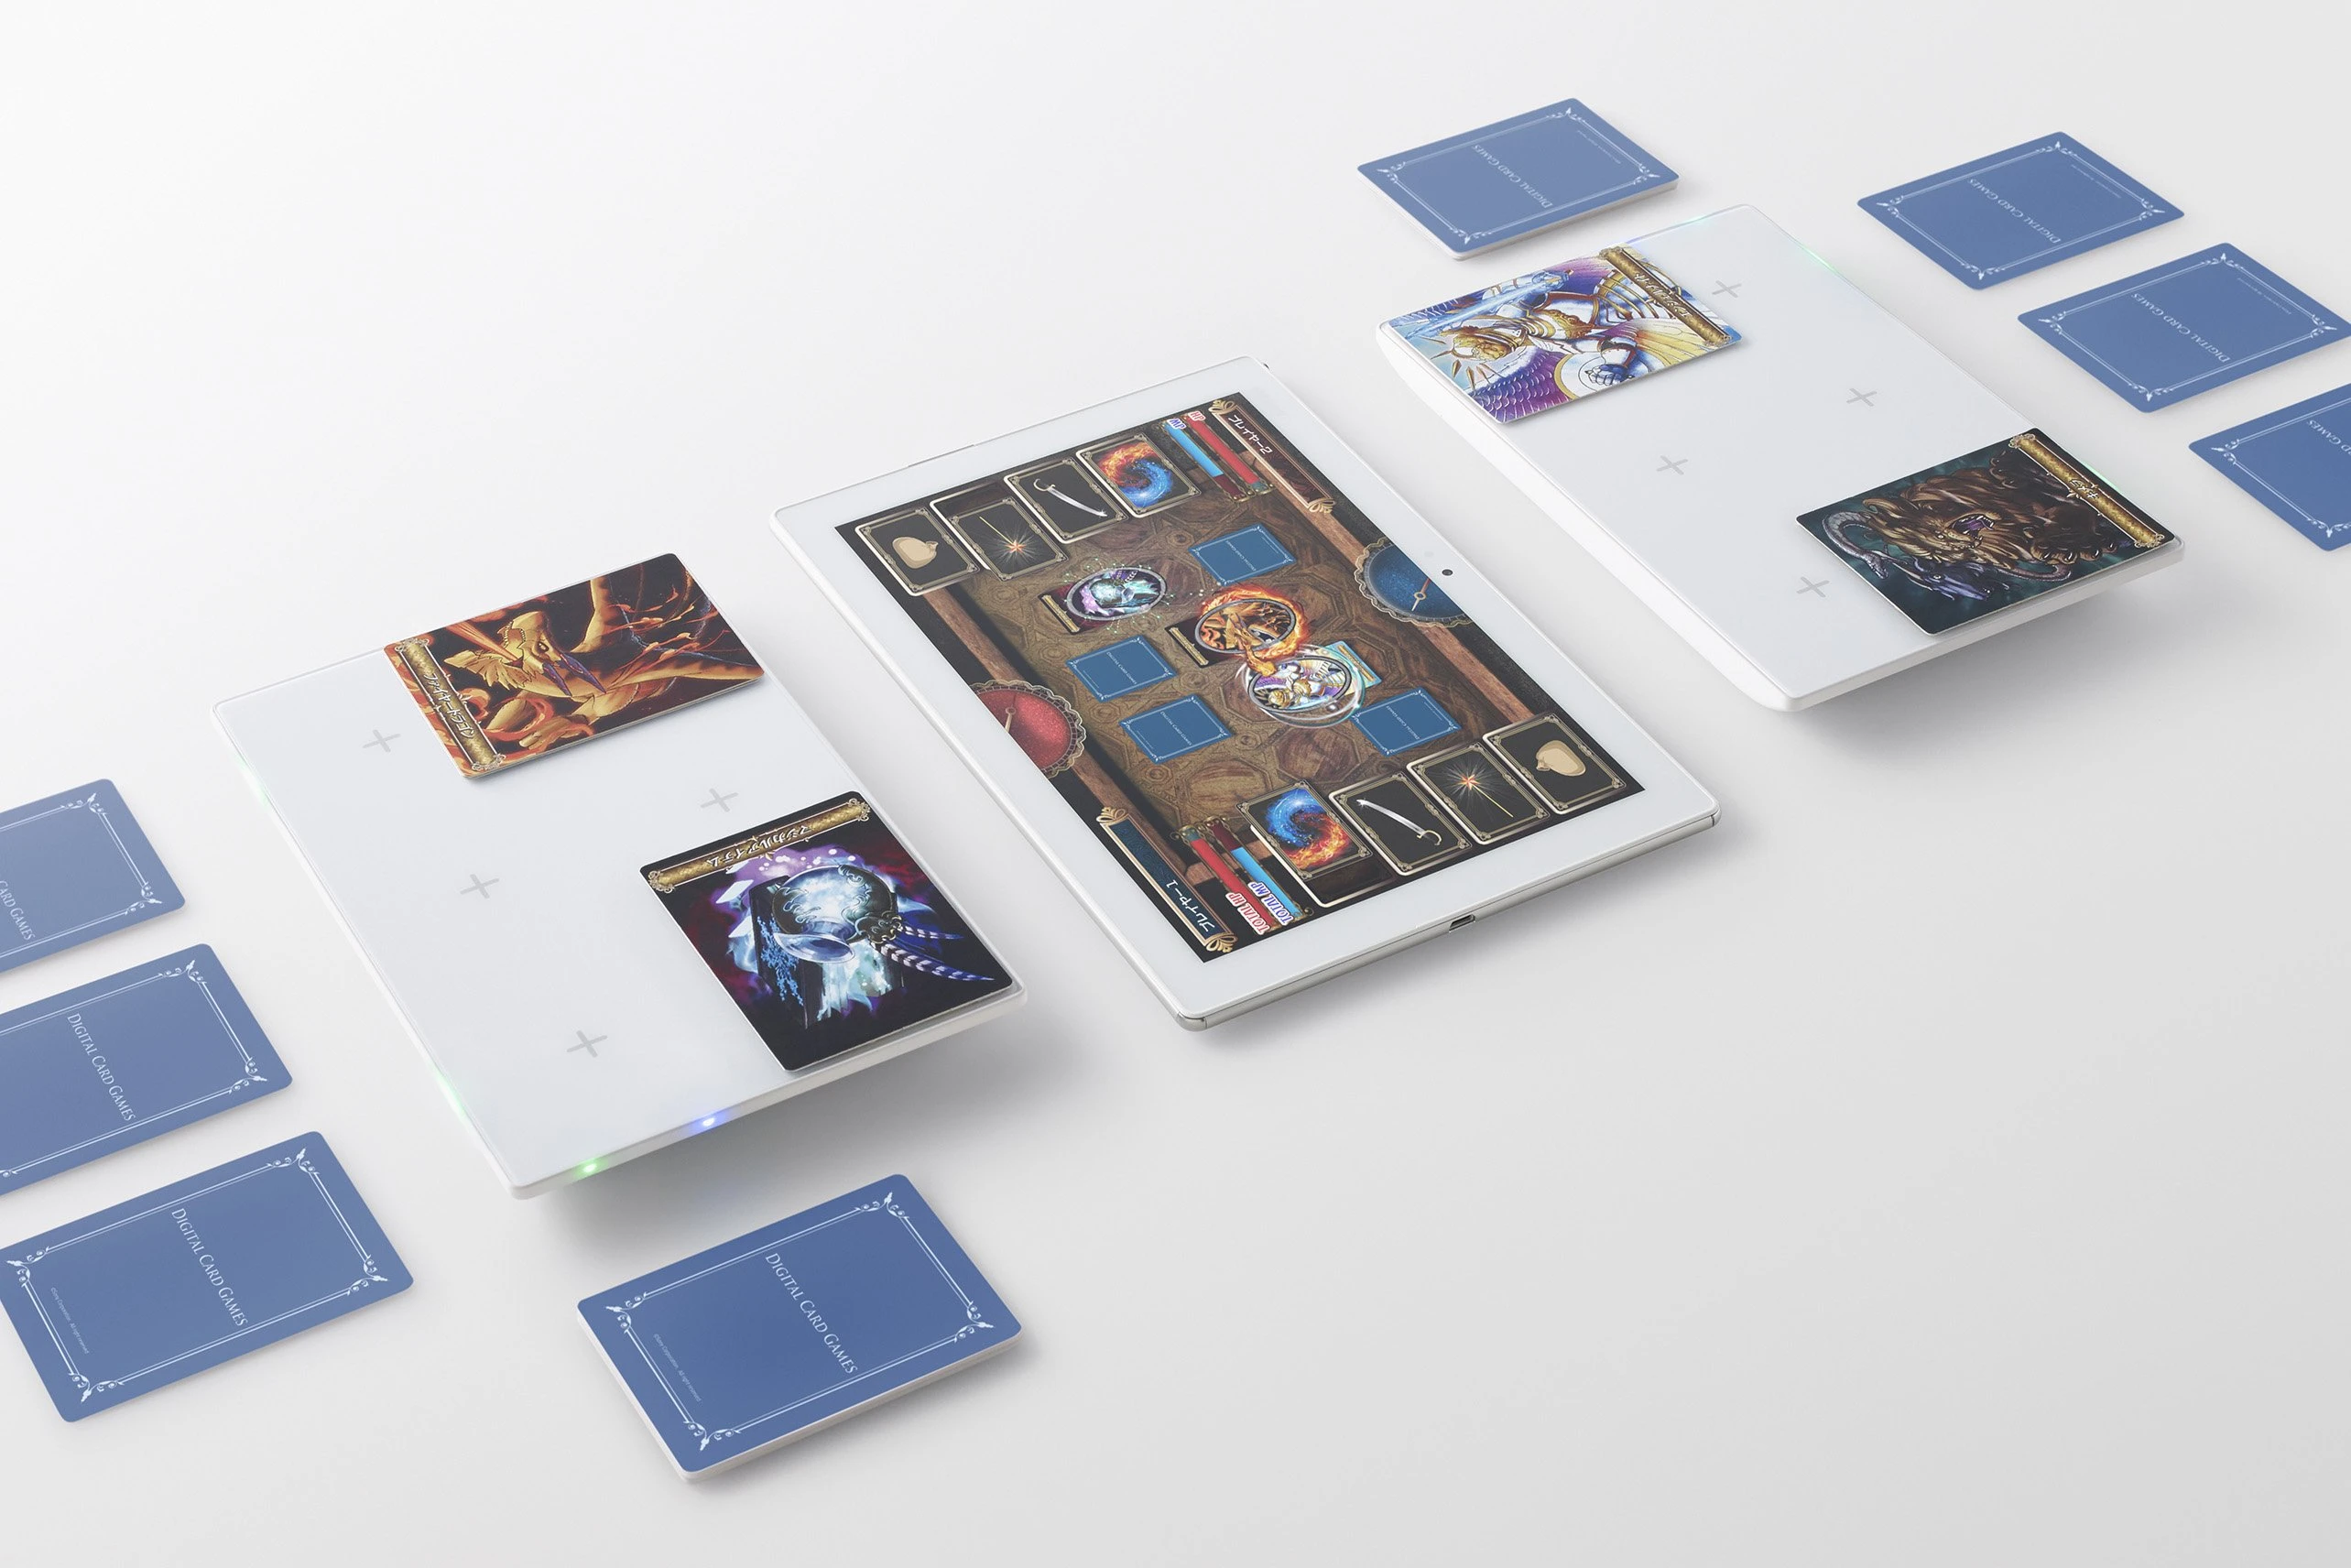 ソニー「Project FIELD」がスマホ連動パッドでカードゲームに新体験を